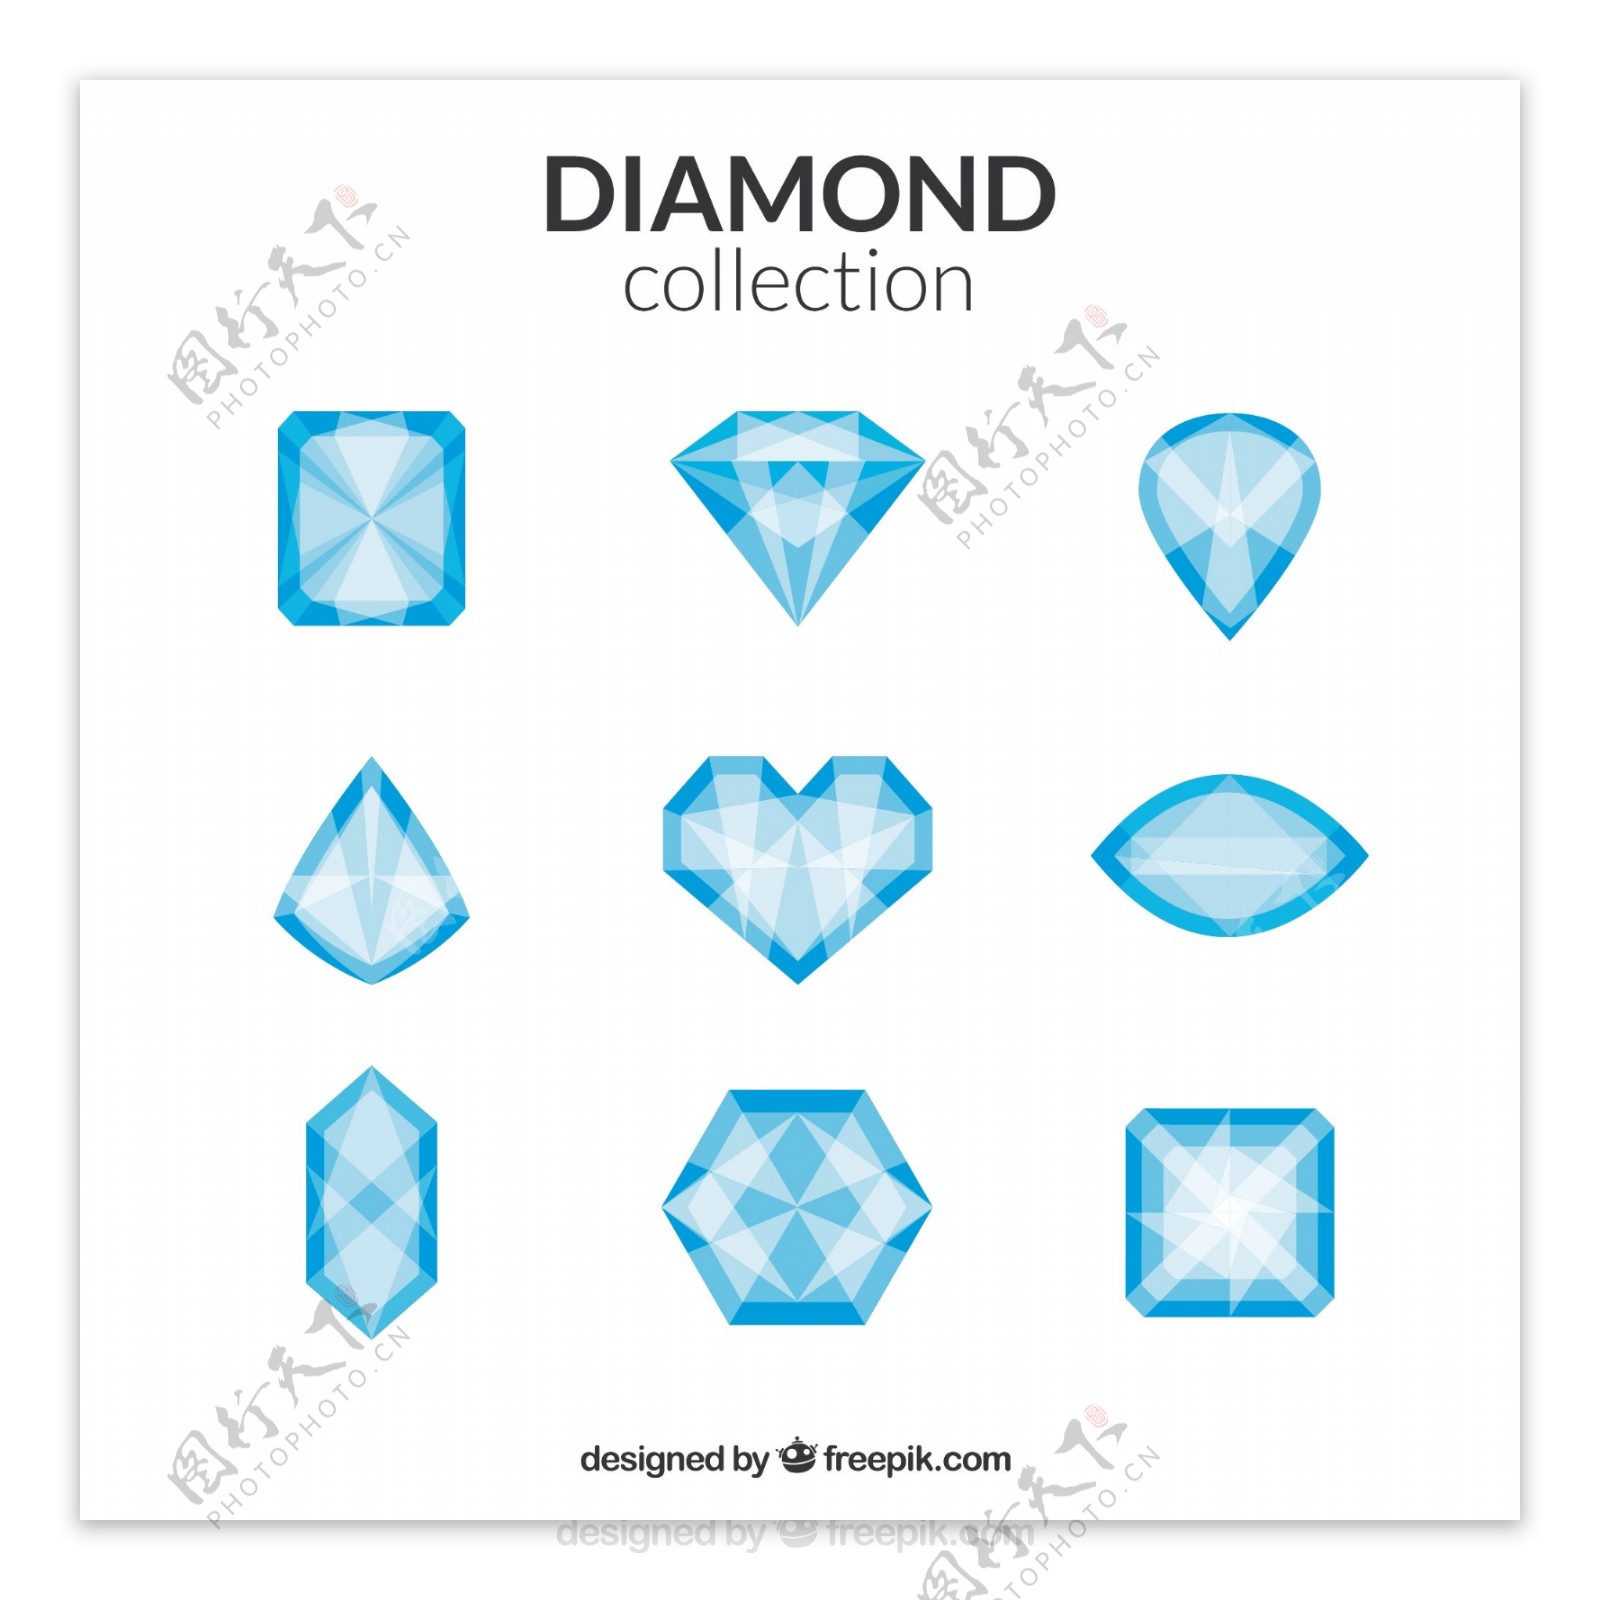 不同形状的钻石收藏